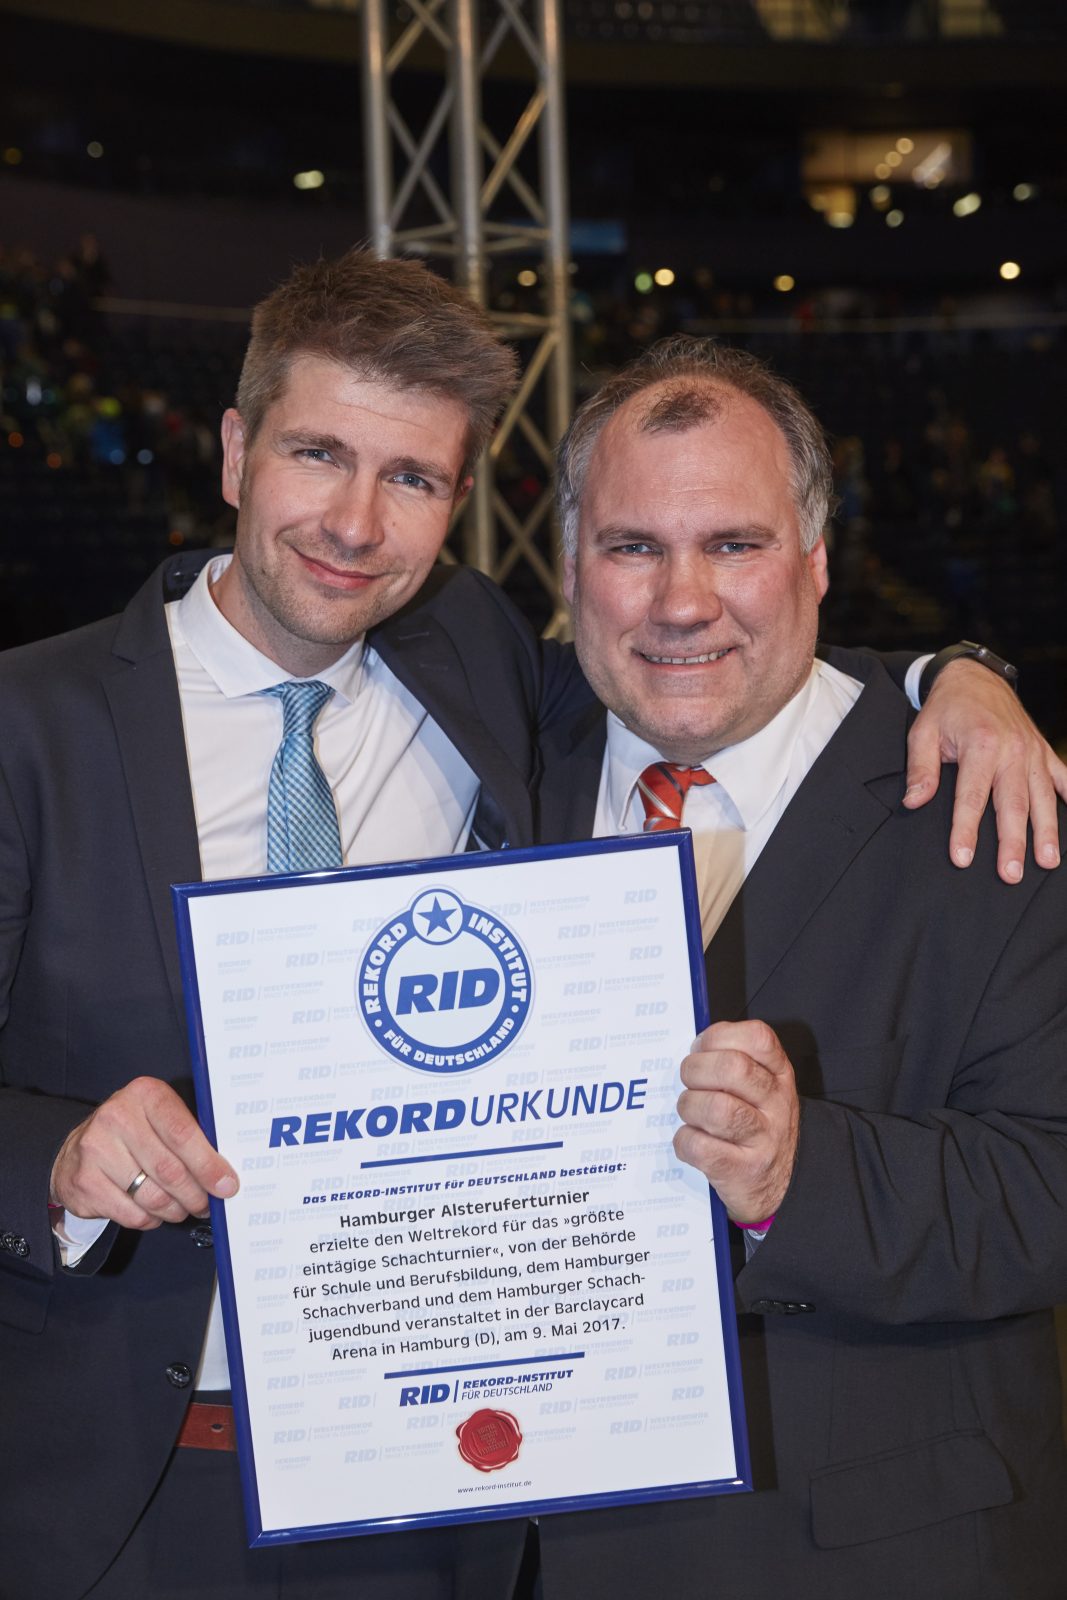 Hamburg holt Weltrekord mit Schulschach-Turnier